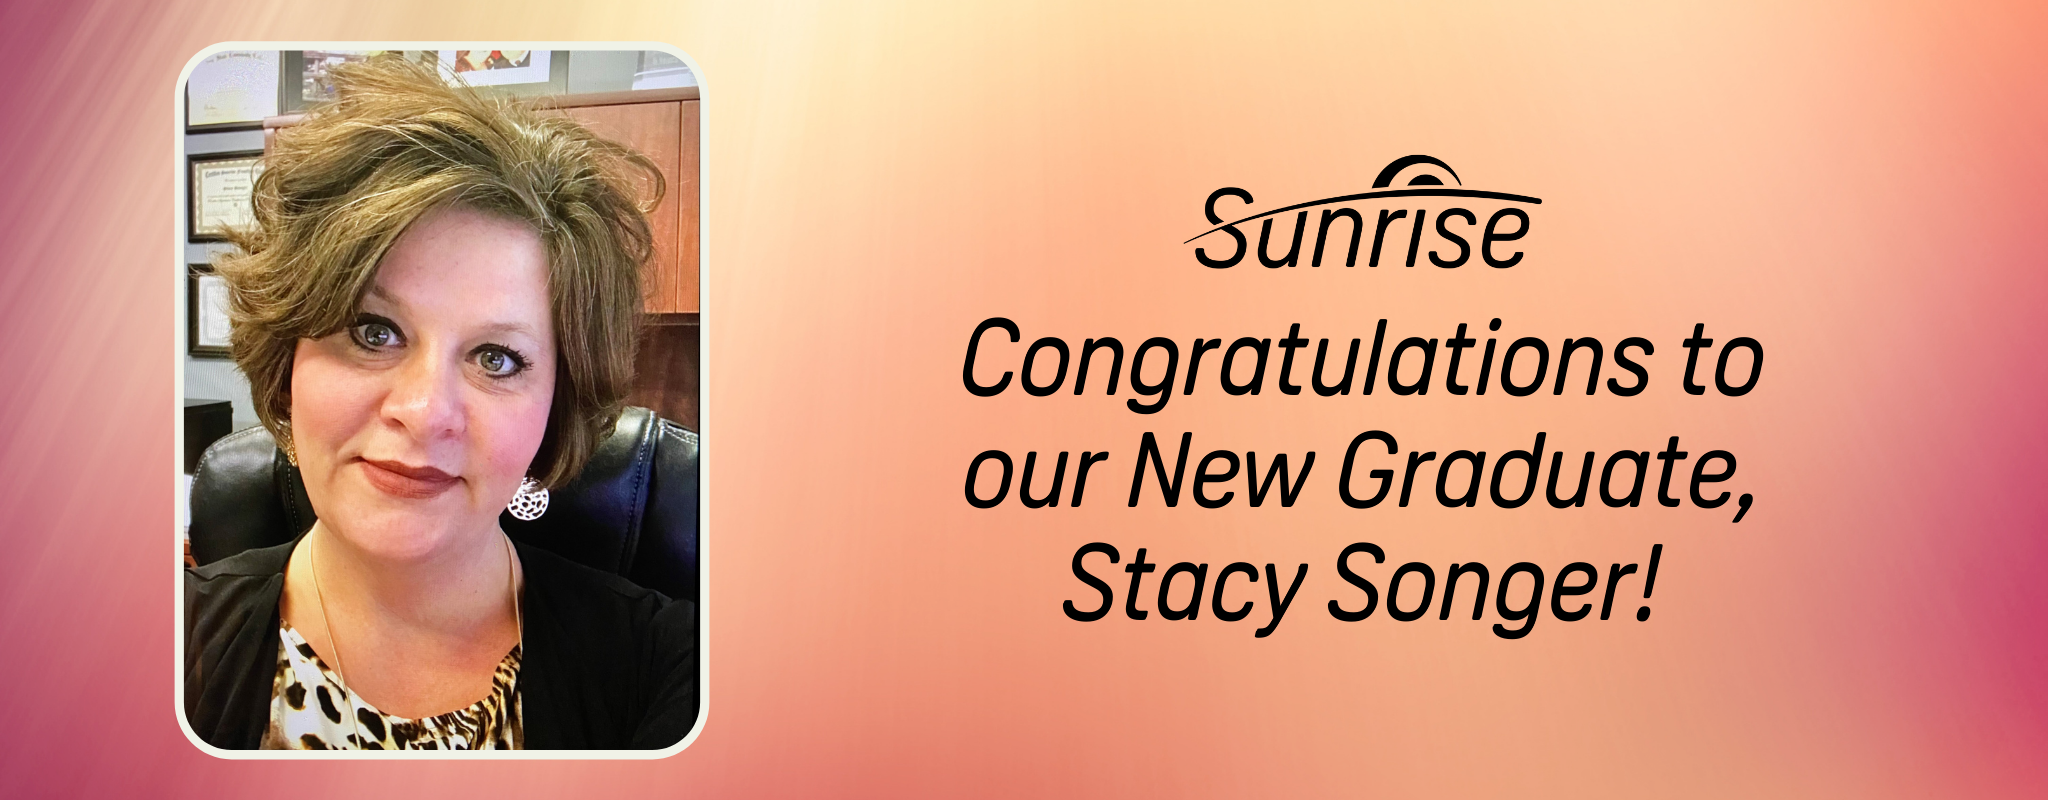 Поздравляем нашу новую выпускницу Стейси Сонгер!